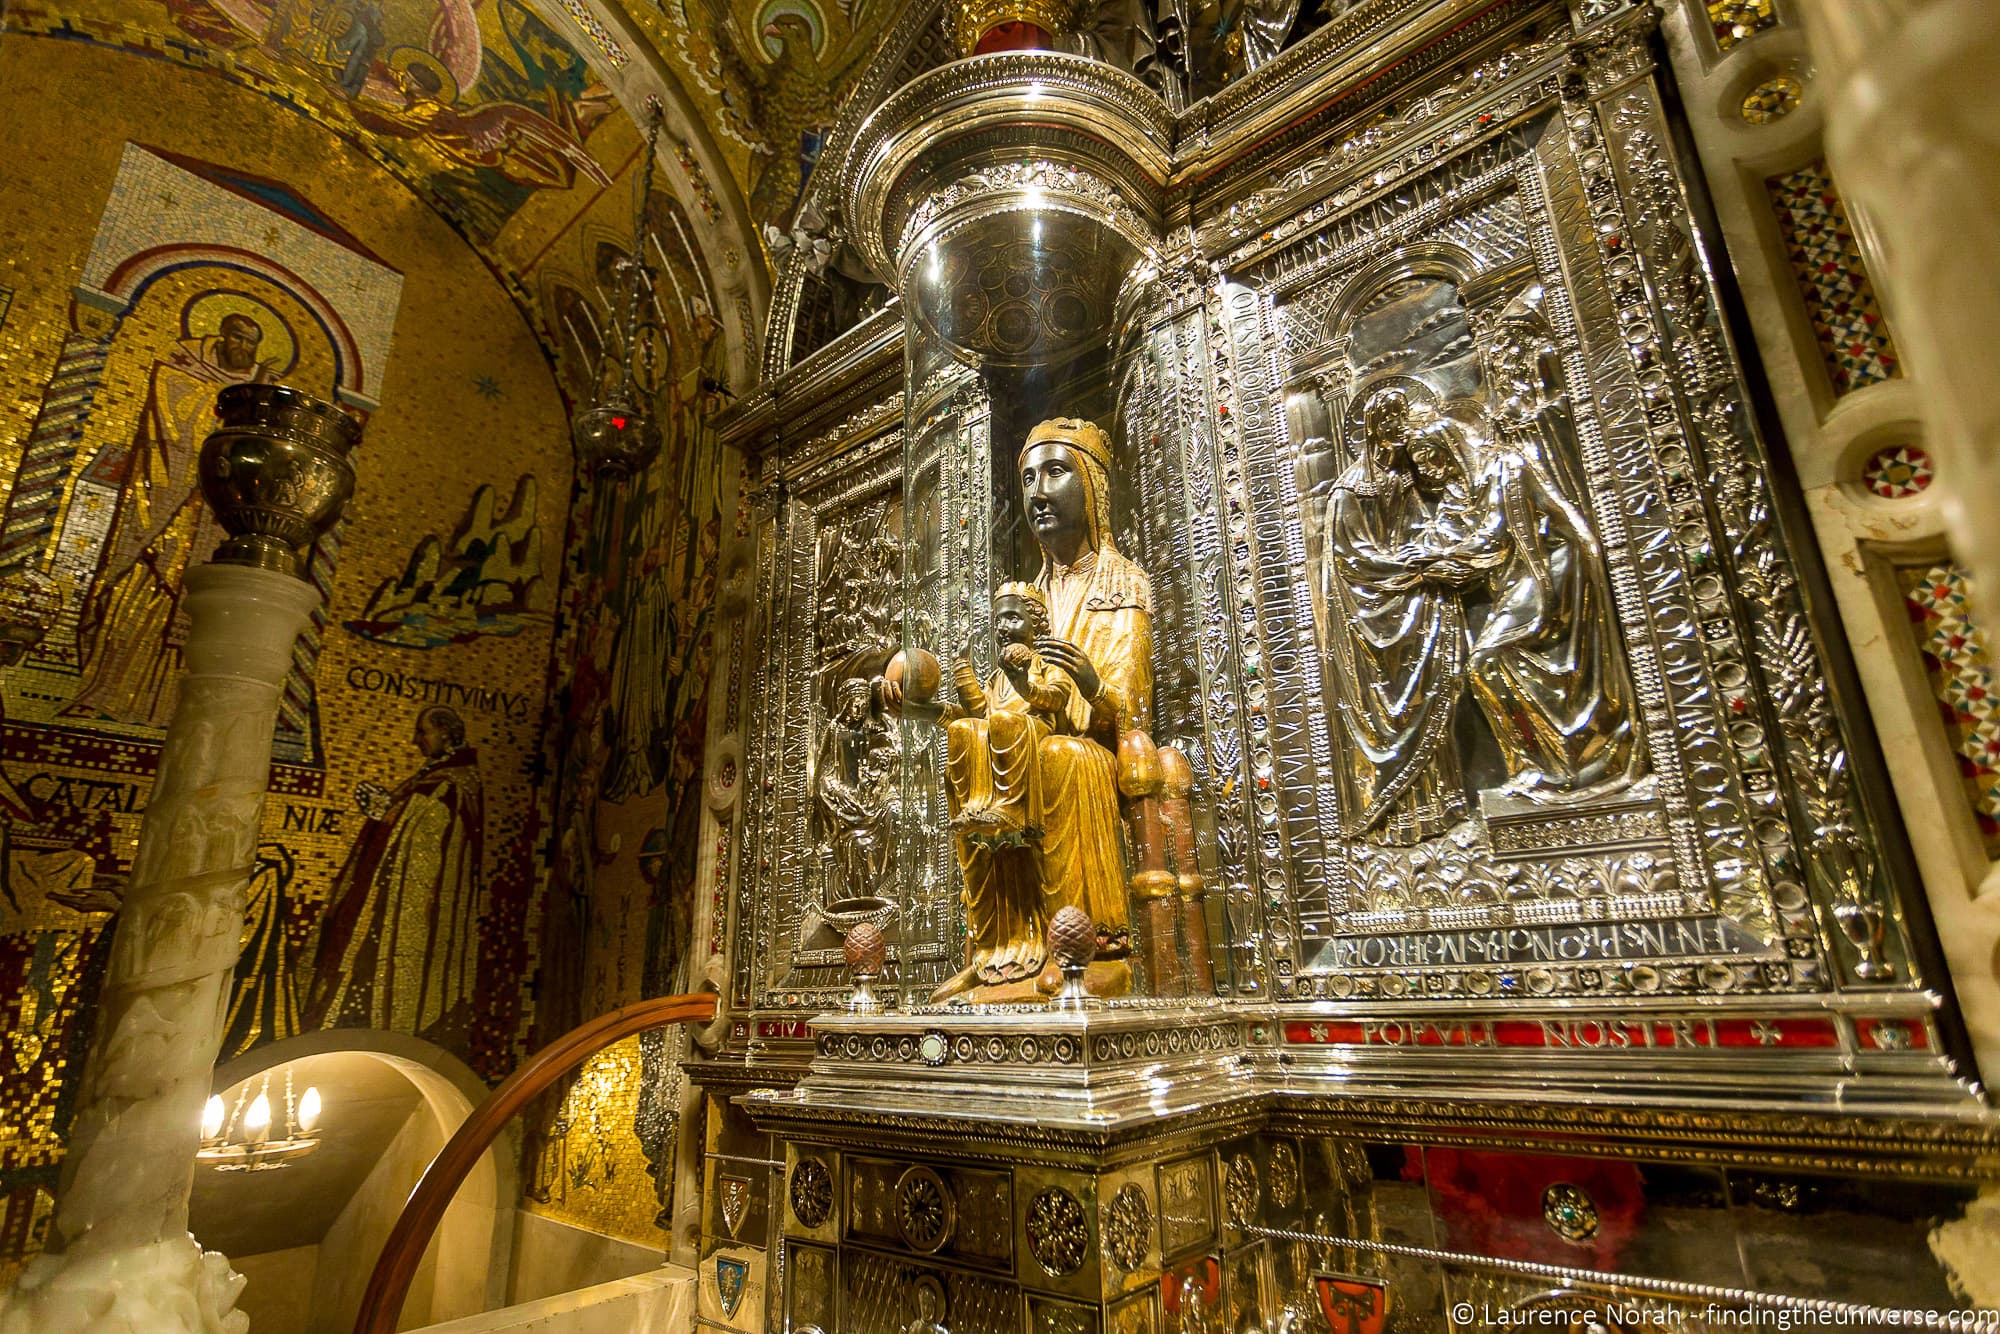 Virgin of Montserrat statue